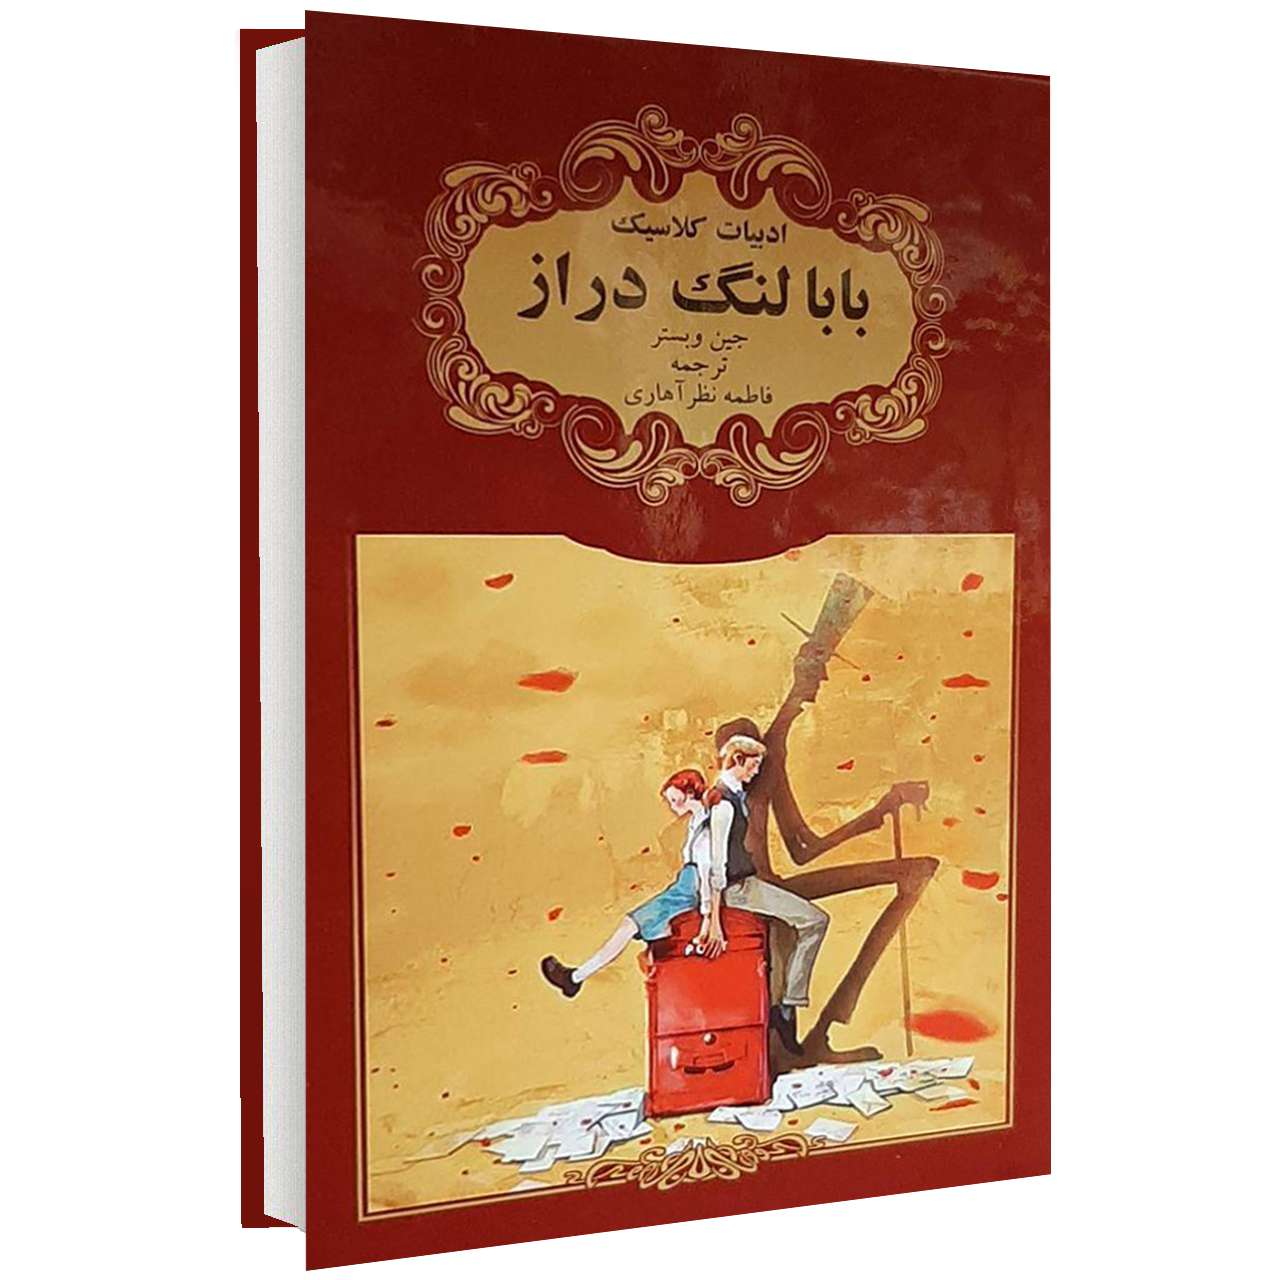 کتاب ادبیات کلاسیک بابا لنگ دراز اثر جین وبستر انتشارات گوهراندیشه